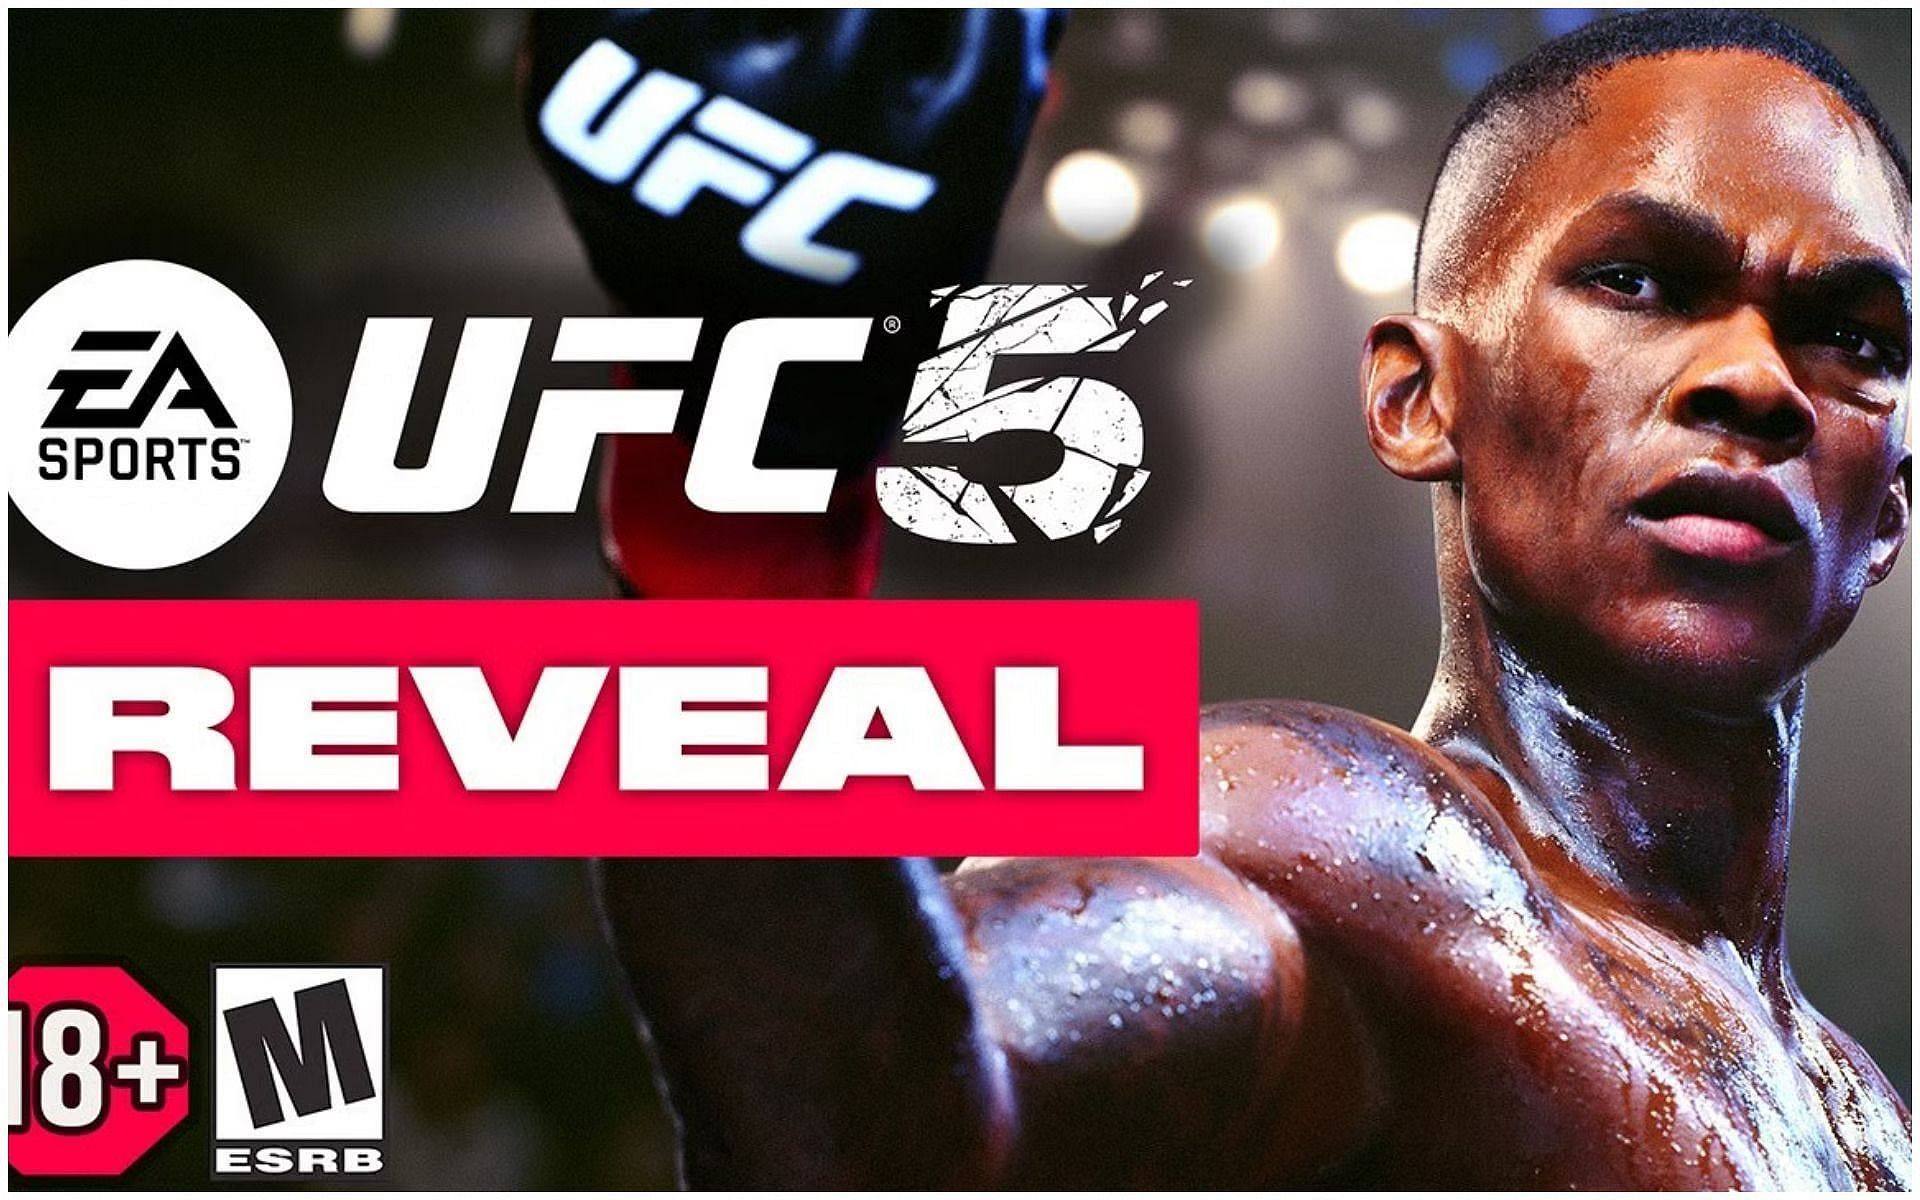 EA Sports UFC 5 [Image Courtesy: EA Sports UFC on YouTube]